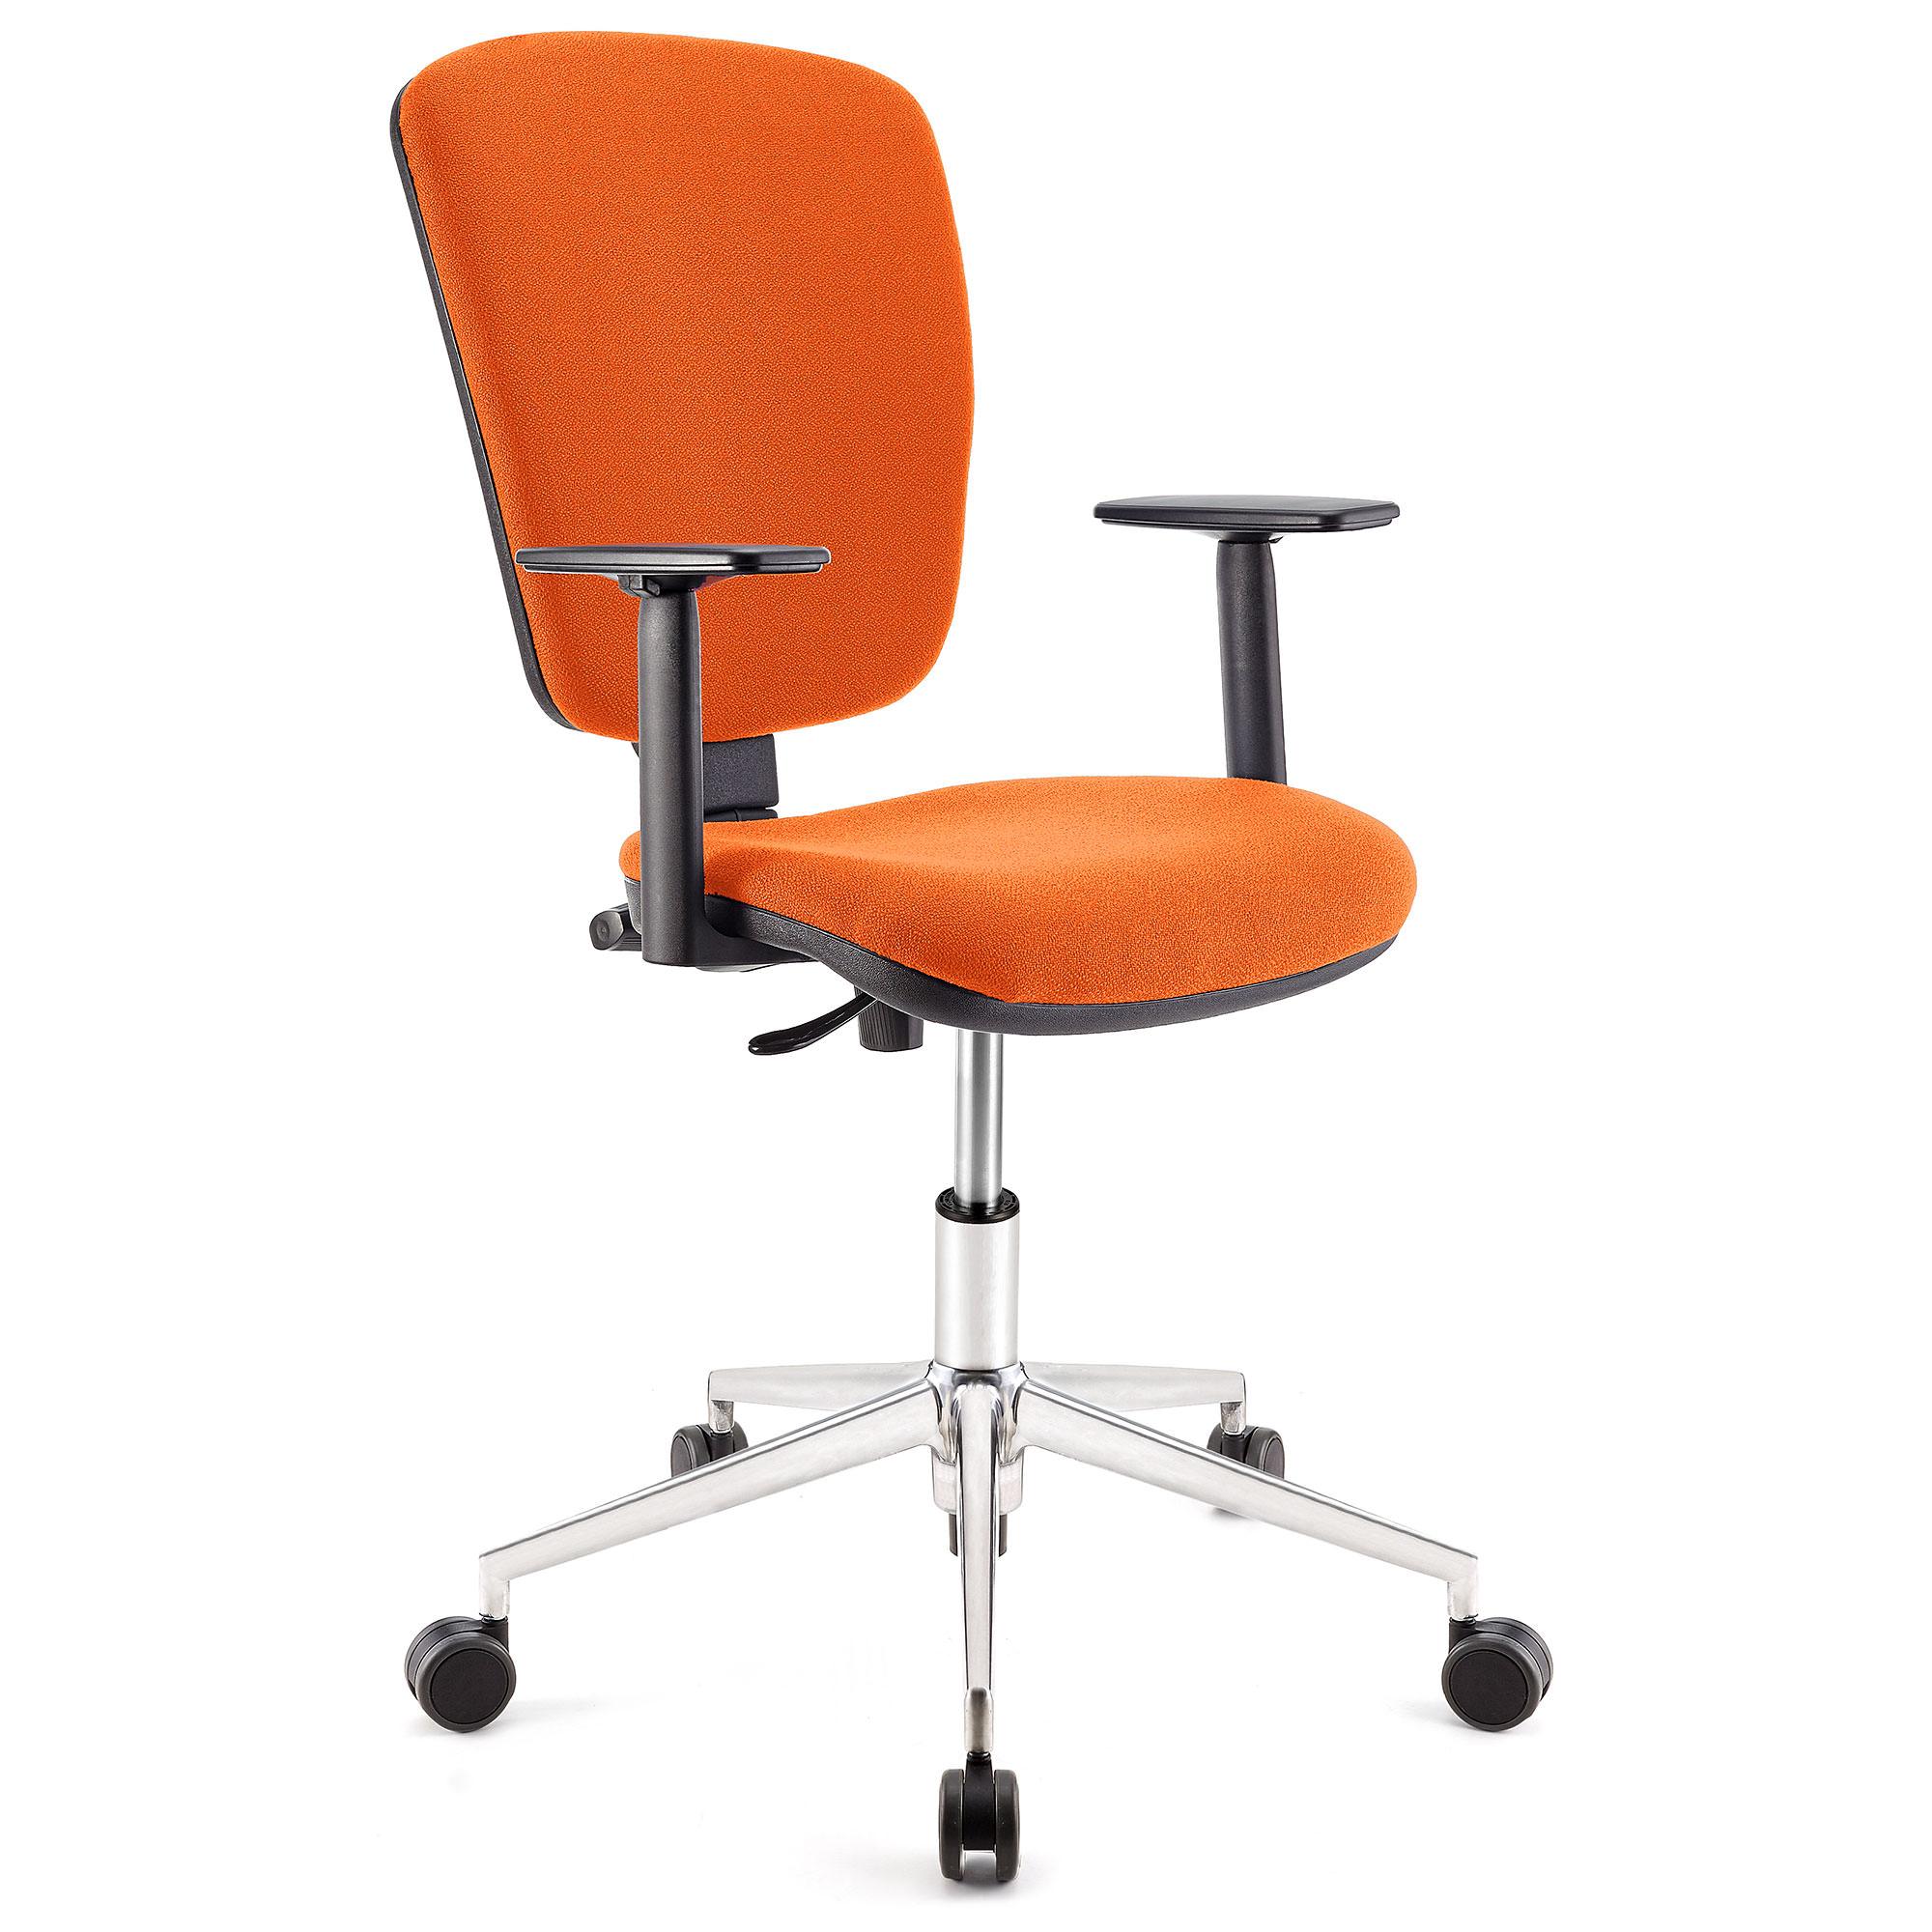 Drehstuhl KALIPSO PRO, verstellbare Rücken- und Armlehnen, Metallgestell, Stoffbezug, Farbe Orange